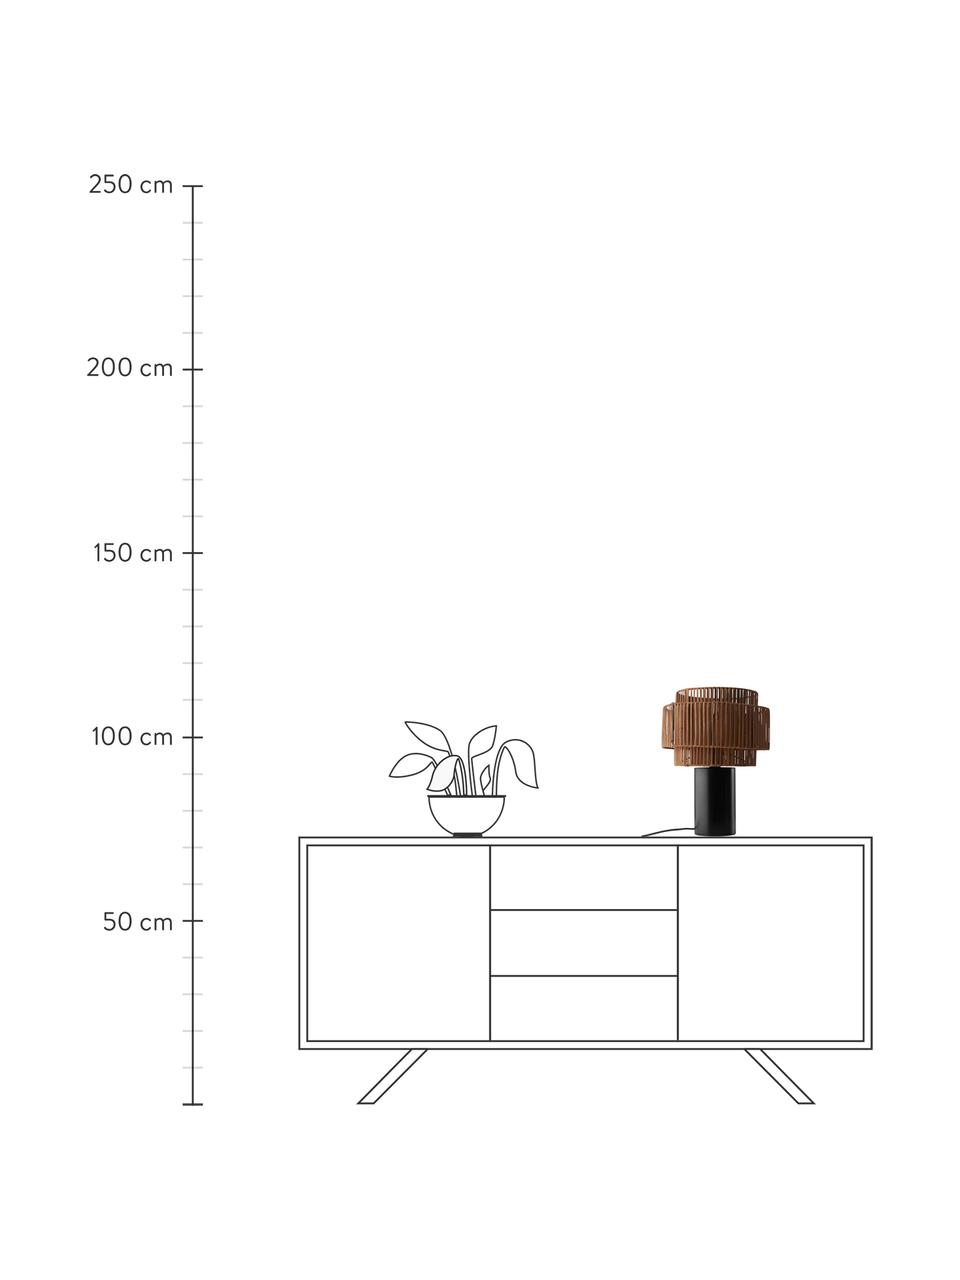 Lámpara de mesa de ratán y madera Emelee, Pantalla: ratán, Cable: cubierto en tela, Madera, negro, Ø 30 x H 41 cm